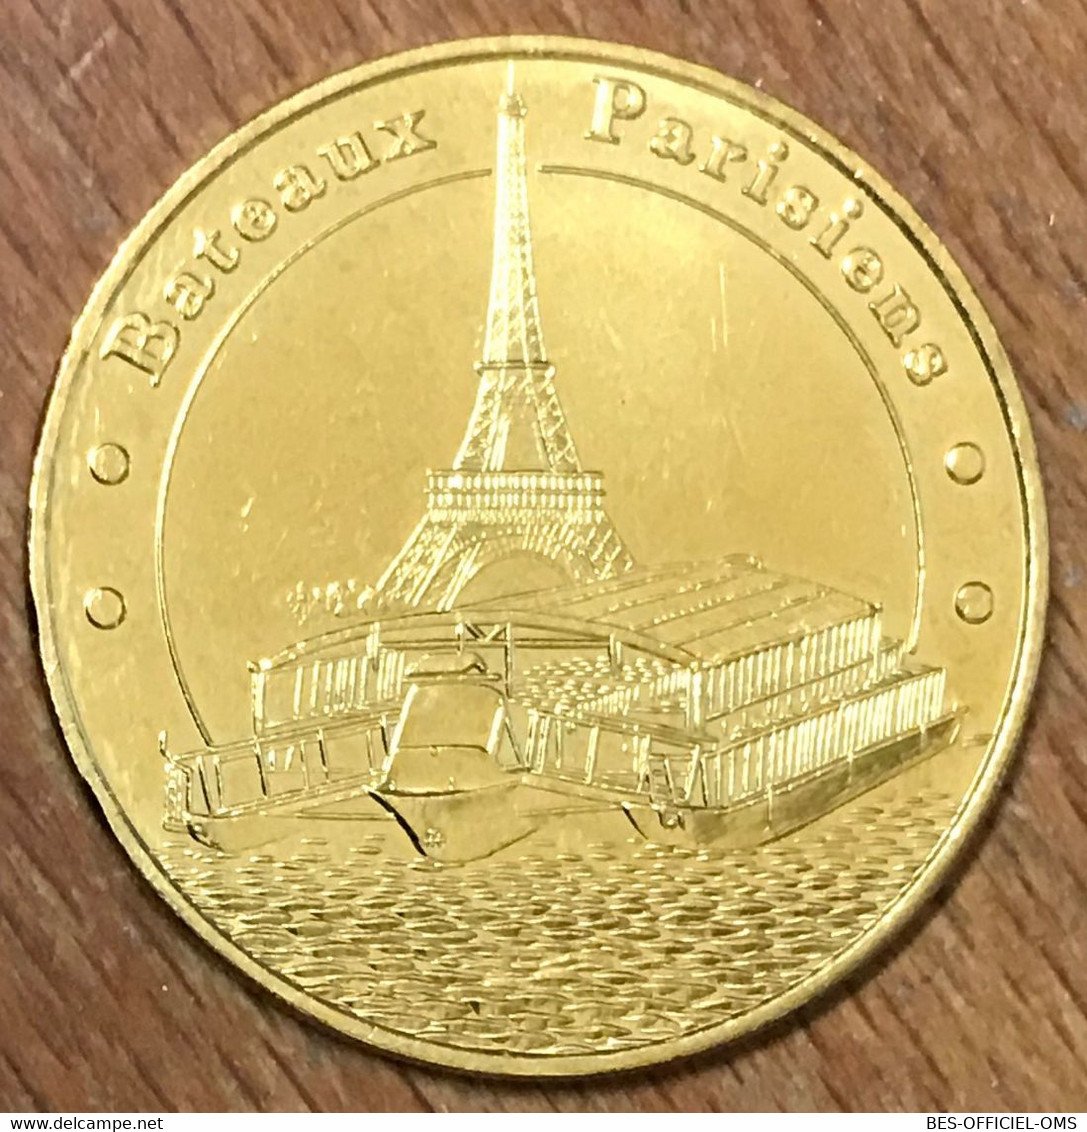 75007 PARIS BATEAUX PARISIENS MDP 2019 MEDAILLE SOUVENIR MONNAIE DE PARIS JETON TOURISTIQUE MEDALS COINS TOKENS - 2019